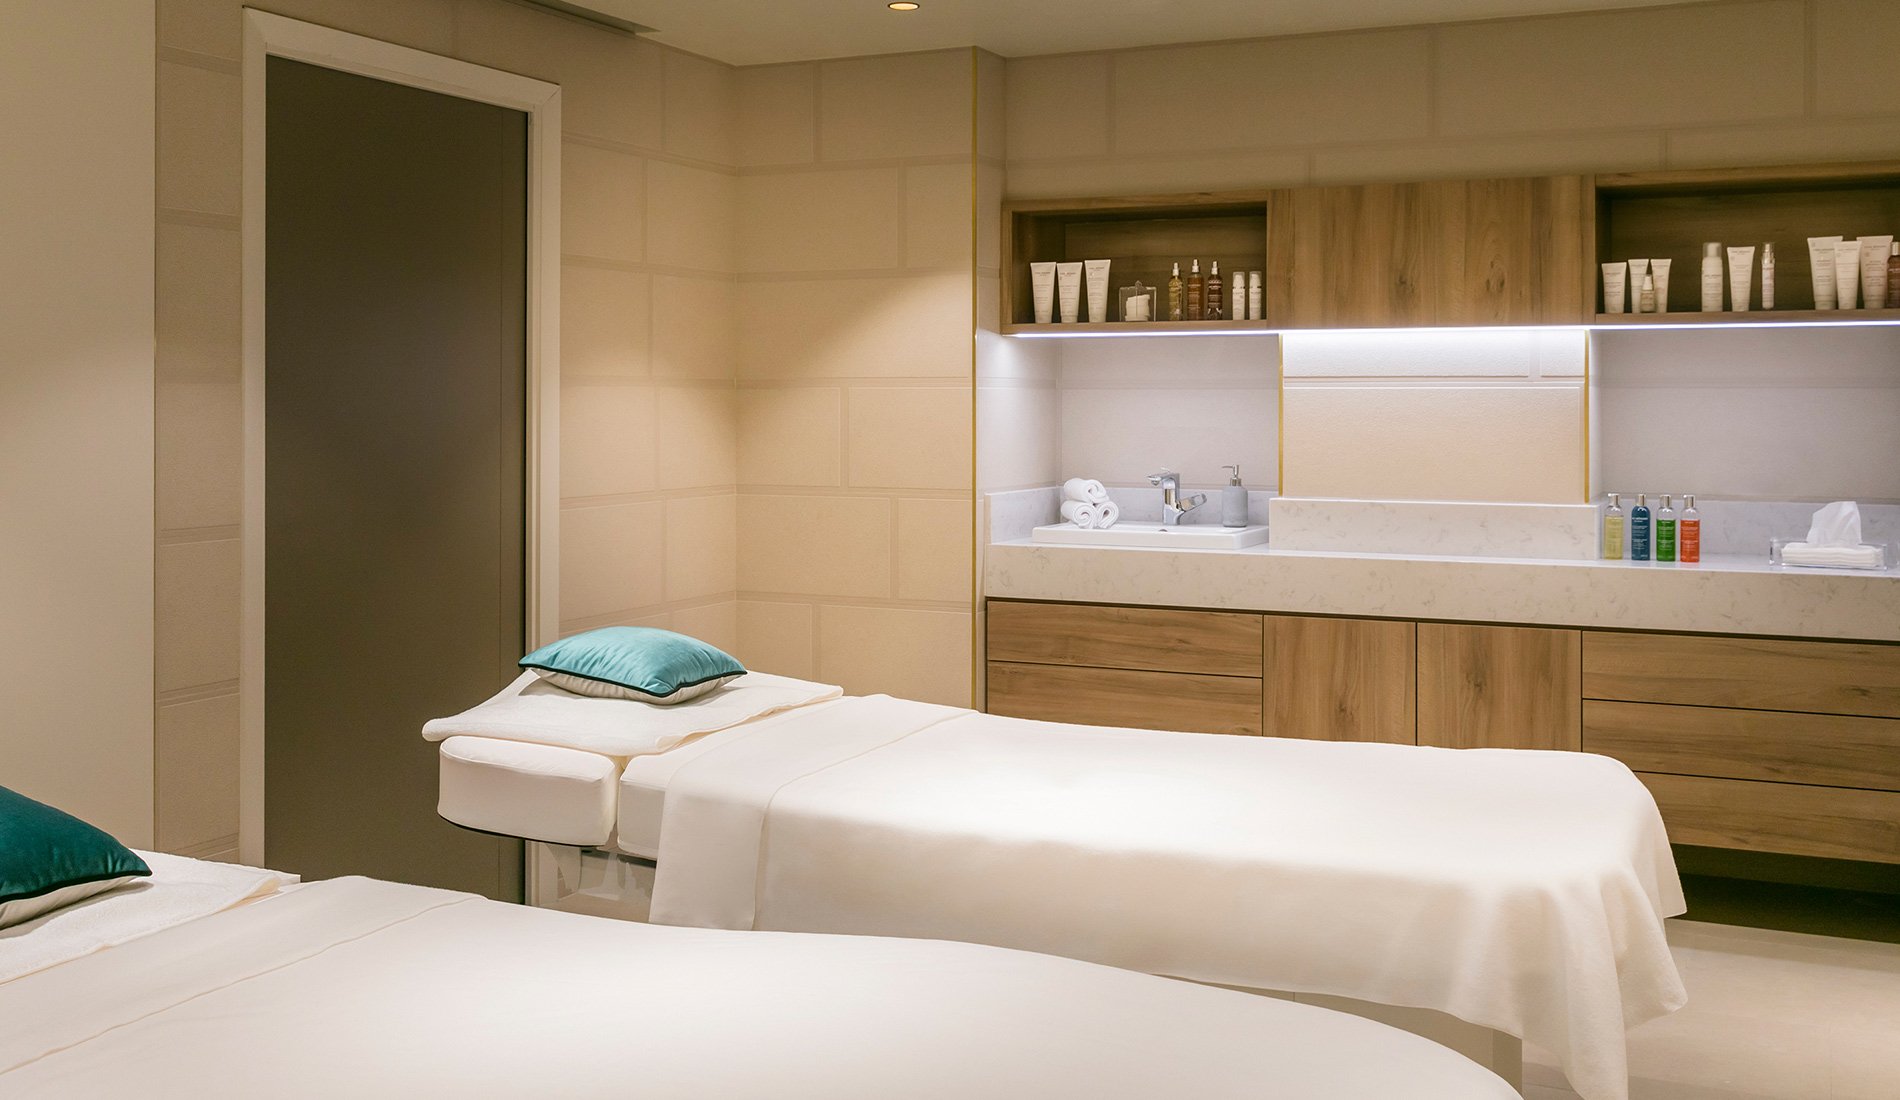 Hôtel de luxe - Maison Albar Hotels Le Pont-Neuf - 5 étoiles - massage